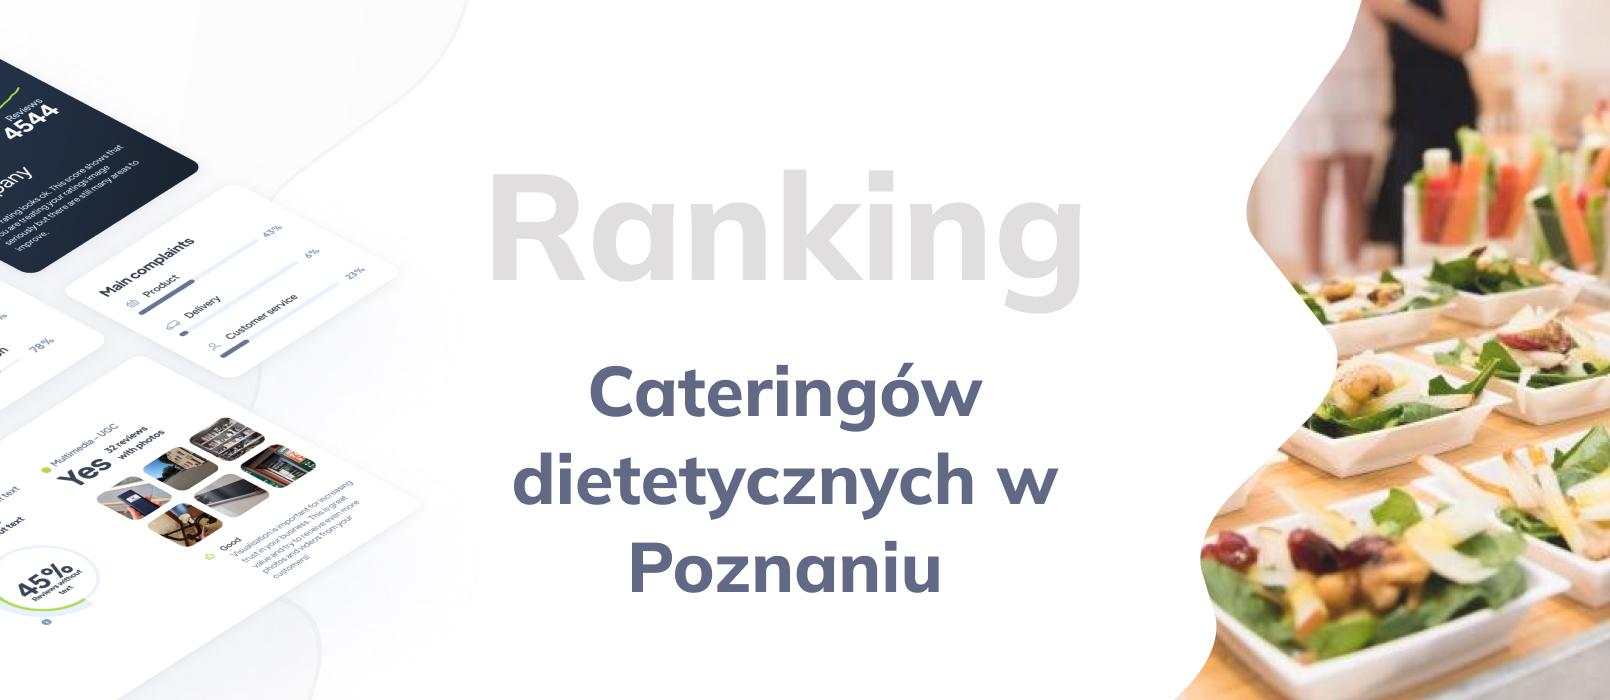 Cateringi dietetyczne w Poznaniu - ranking TOP 10 